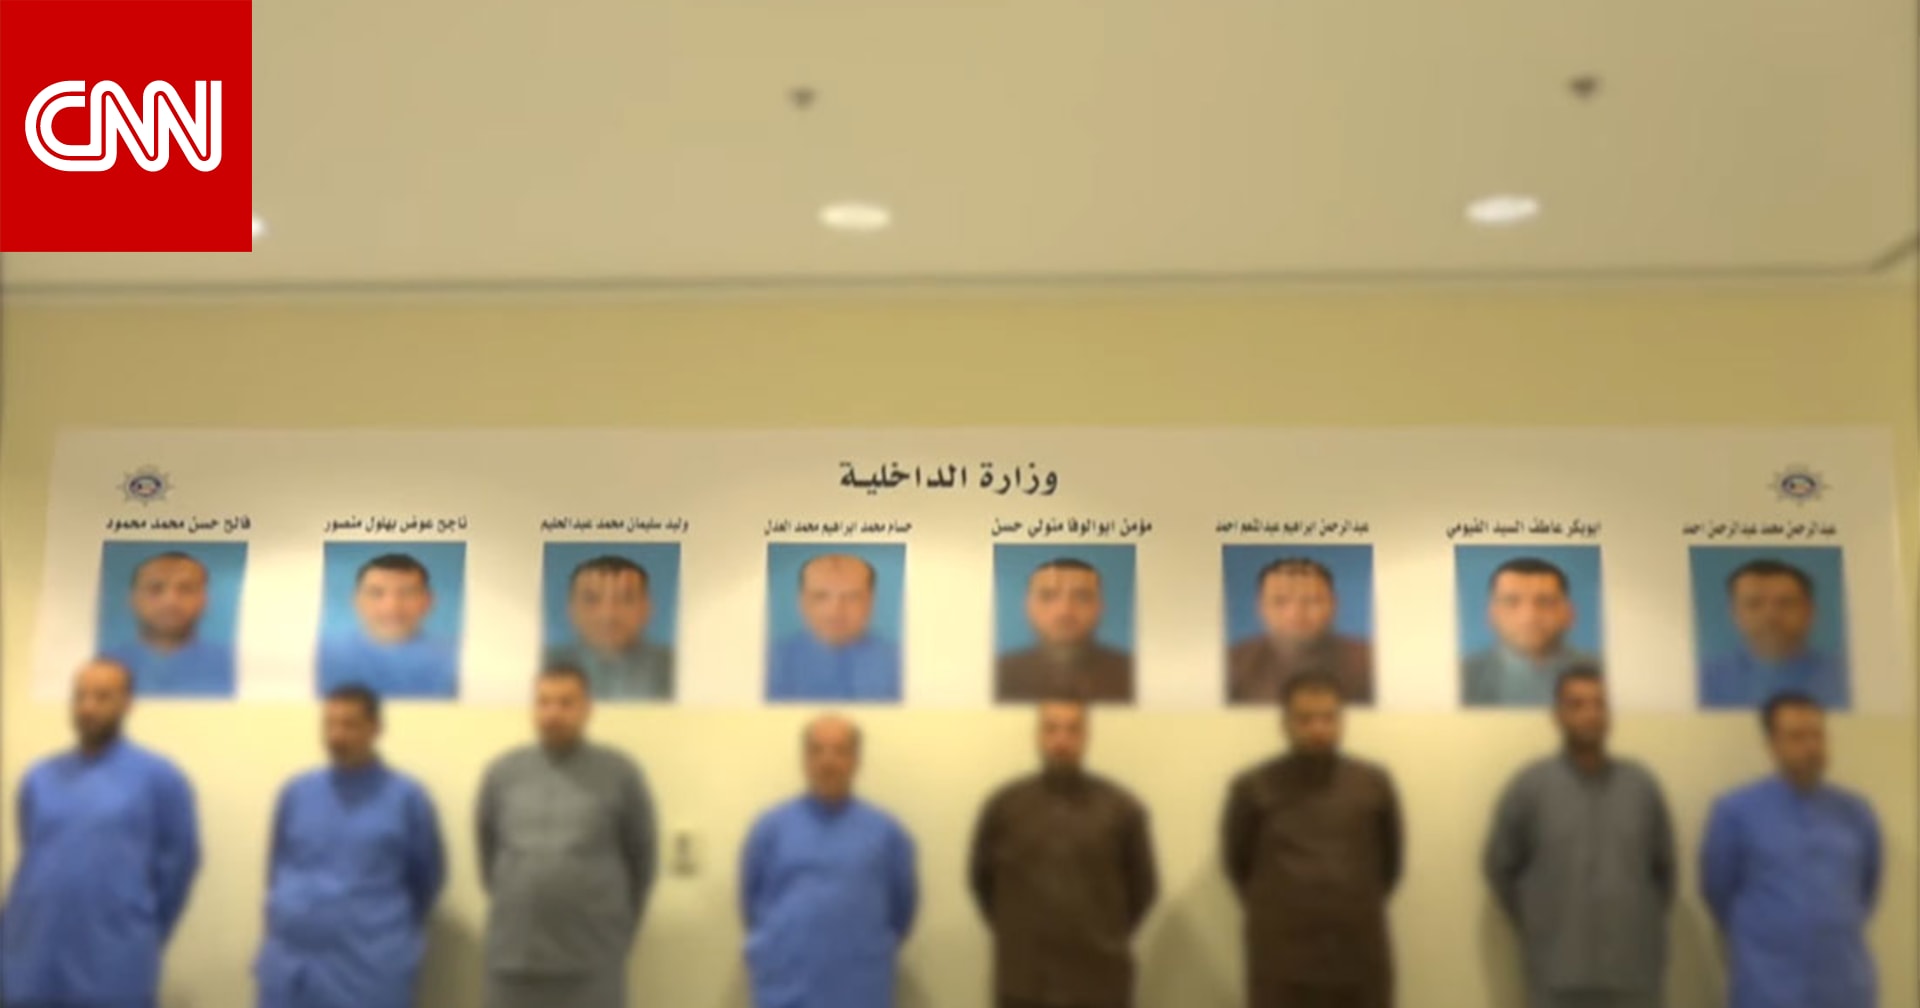 خارجية الكويت توضح تسمية جماعة الإخوان بـ الإرهابية  وسبب تسليم أعضاء الخلية لمصر - CNN Arabic